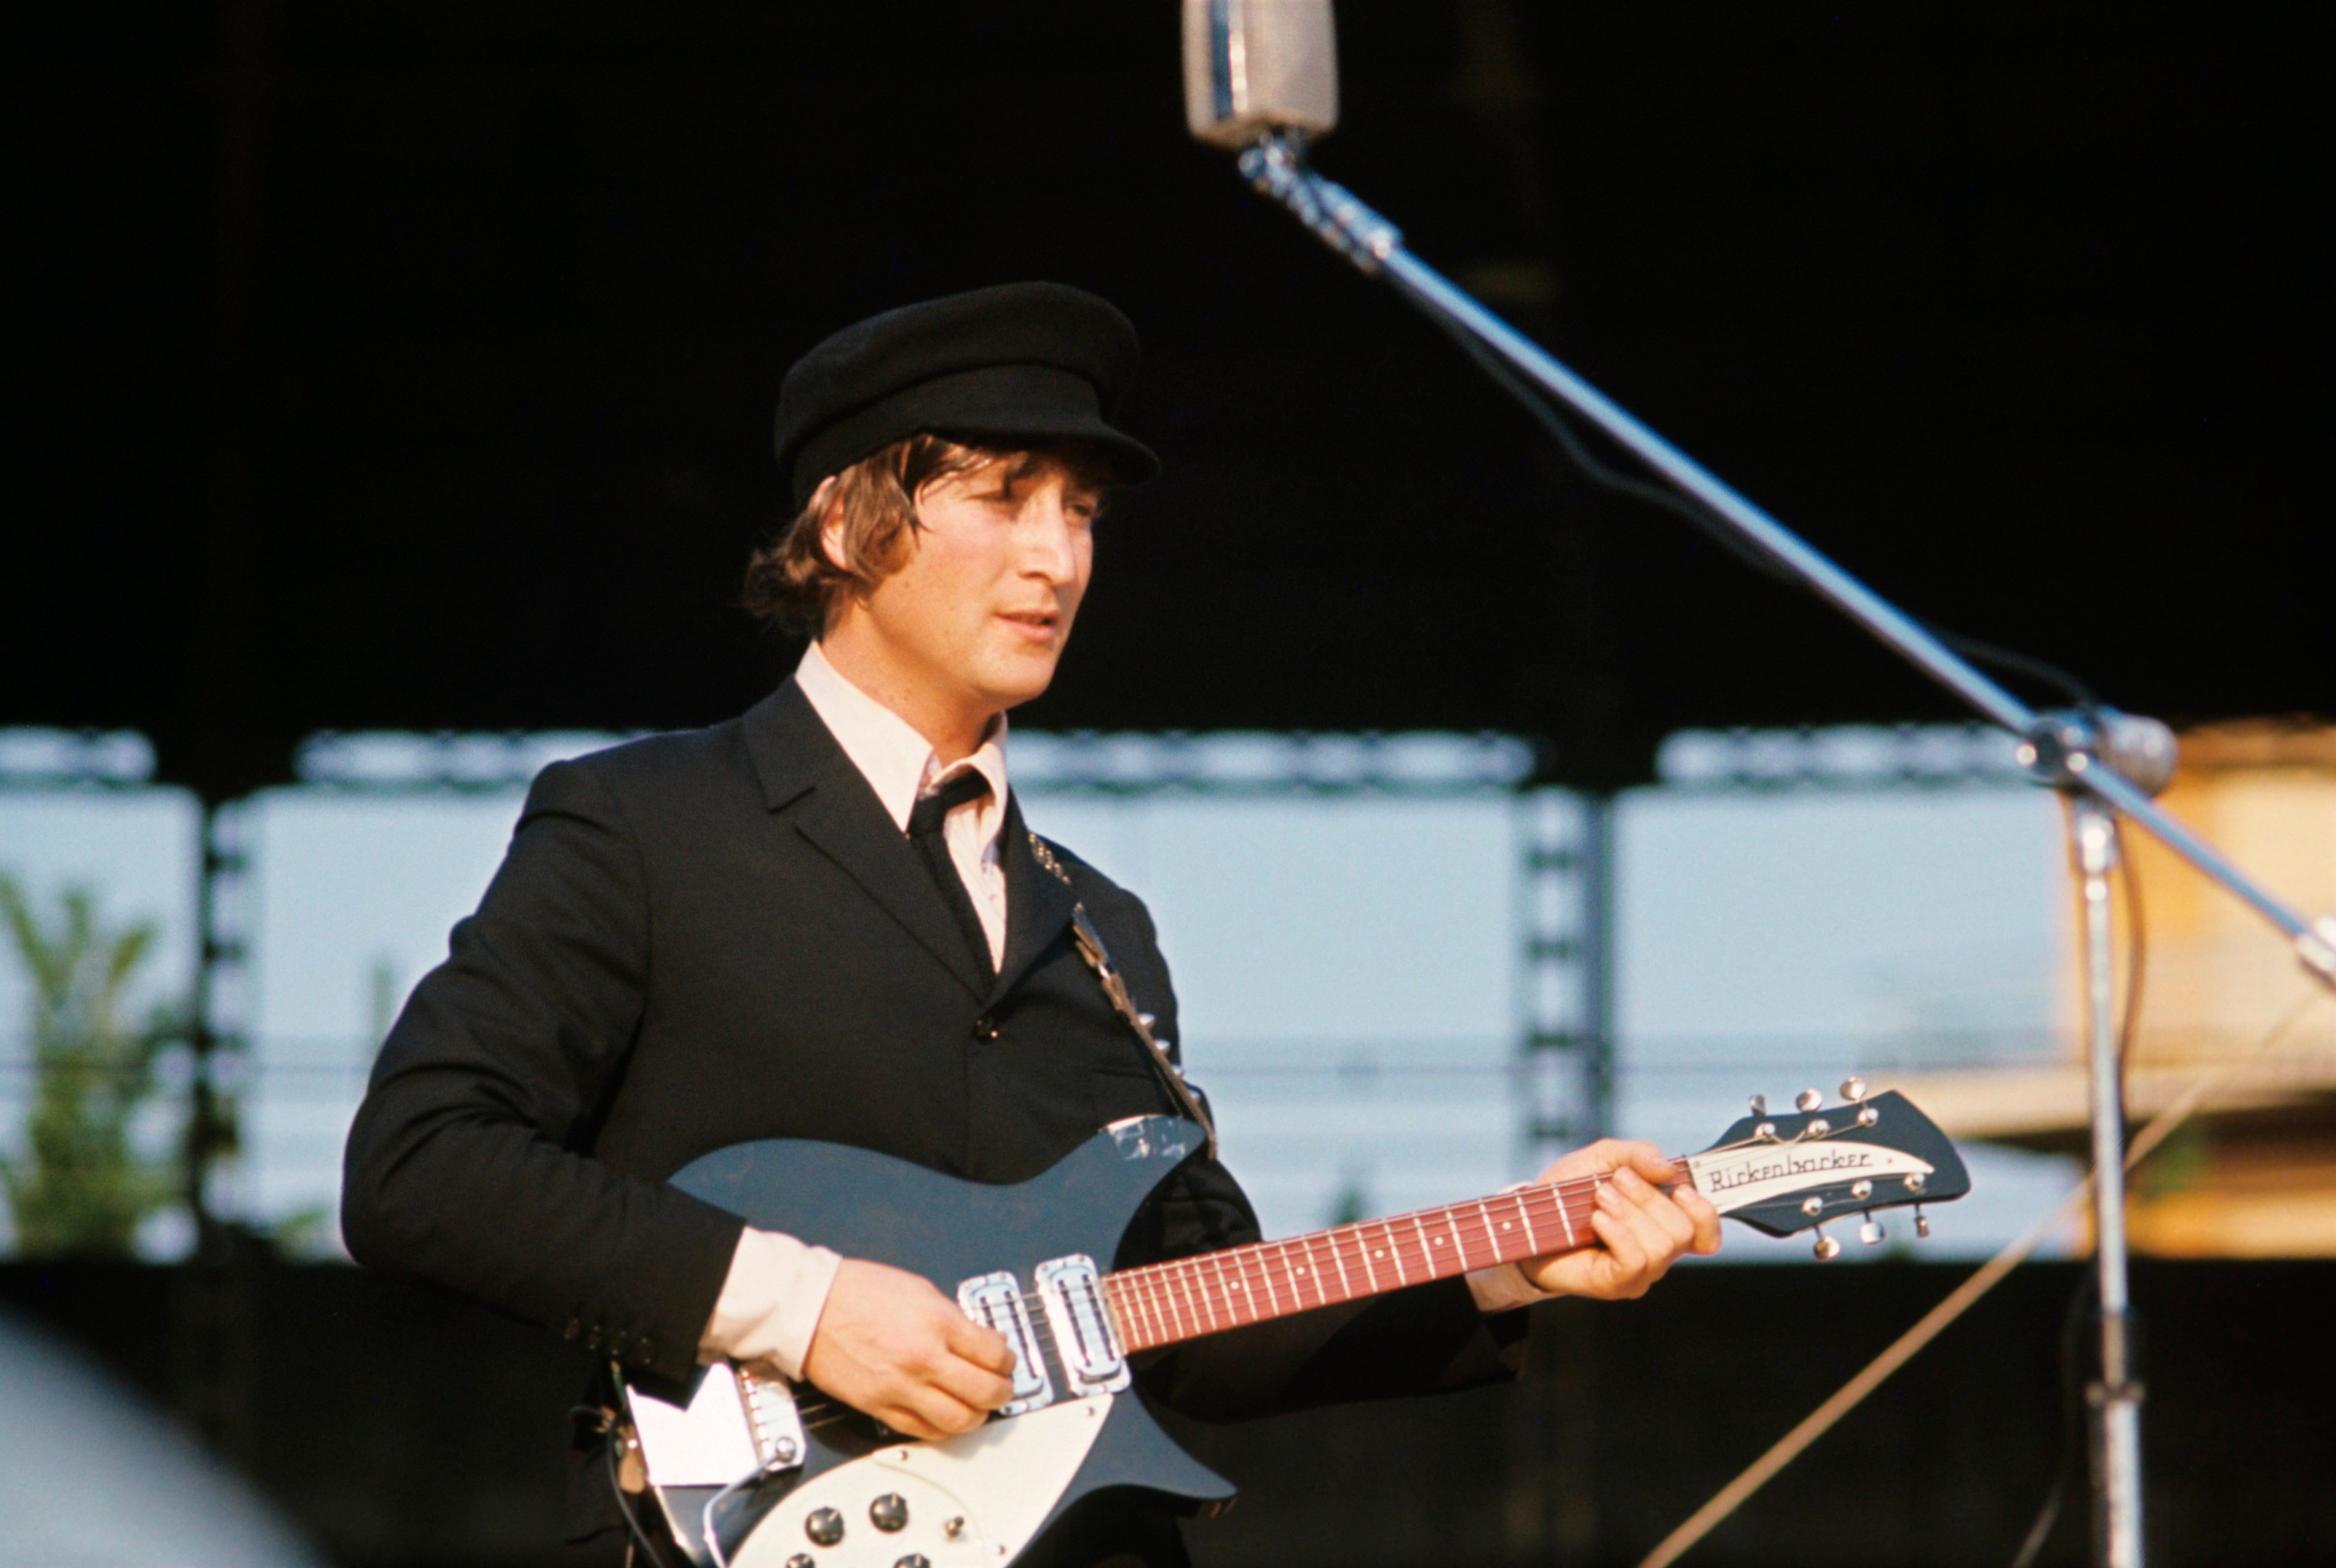 John Lennon holding a blue guitar